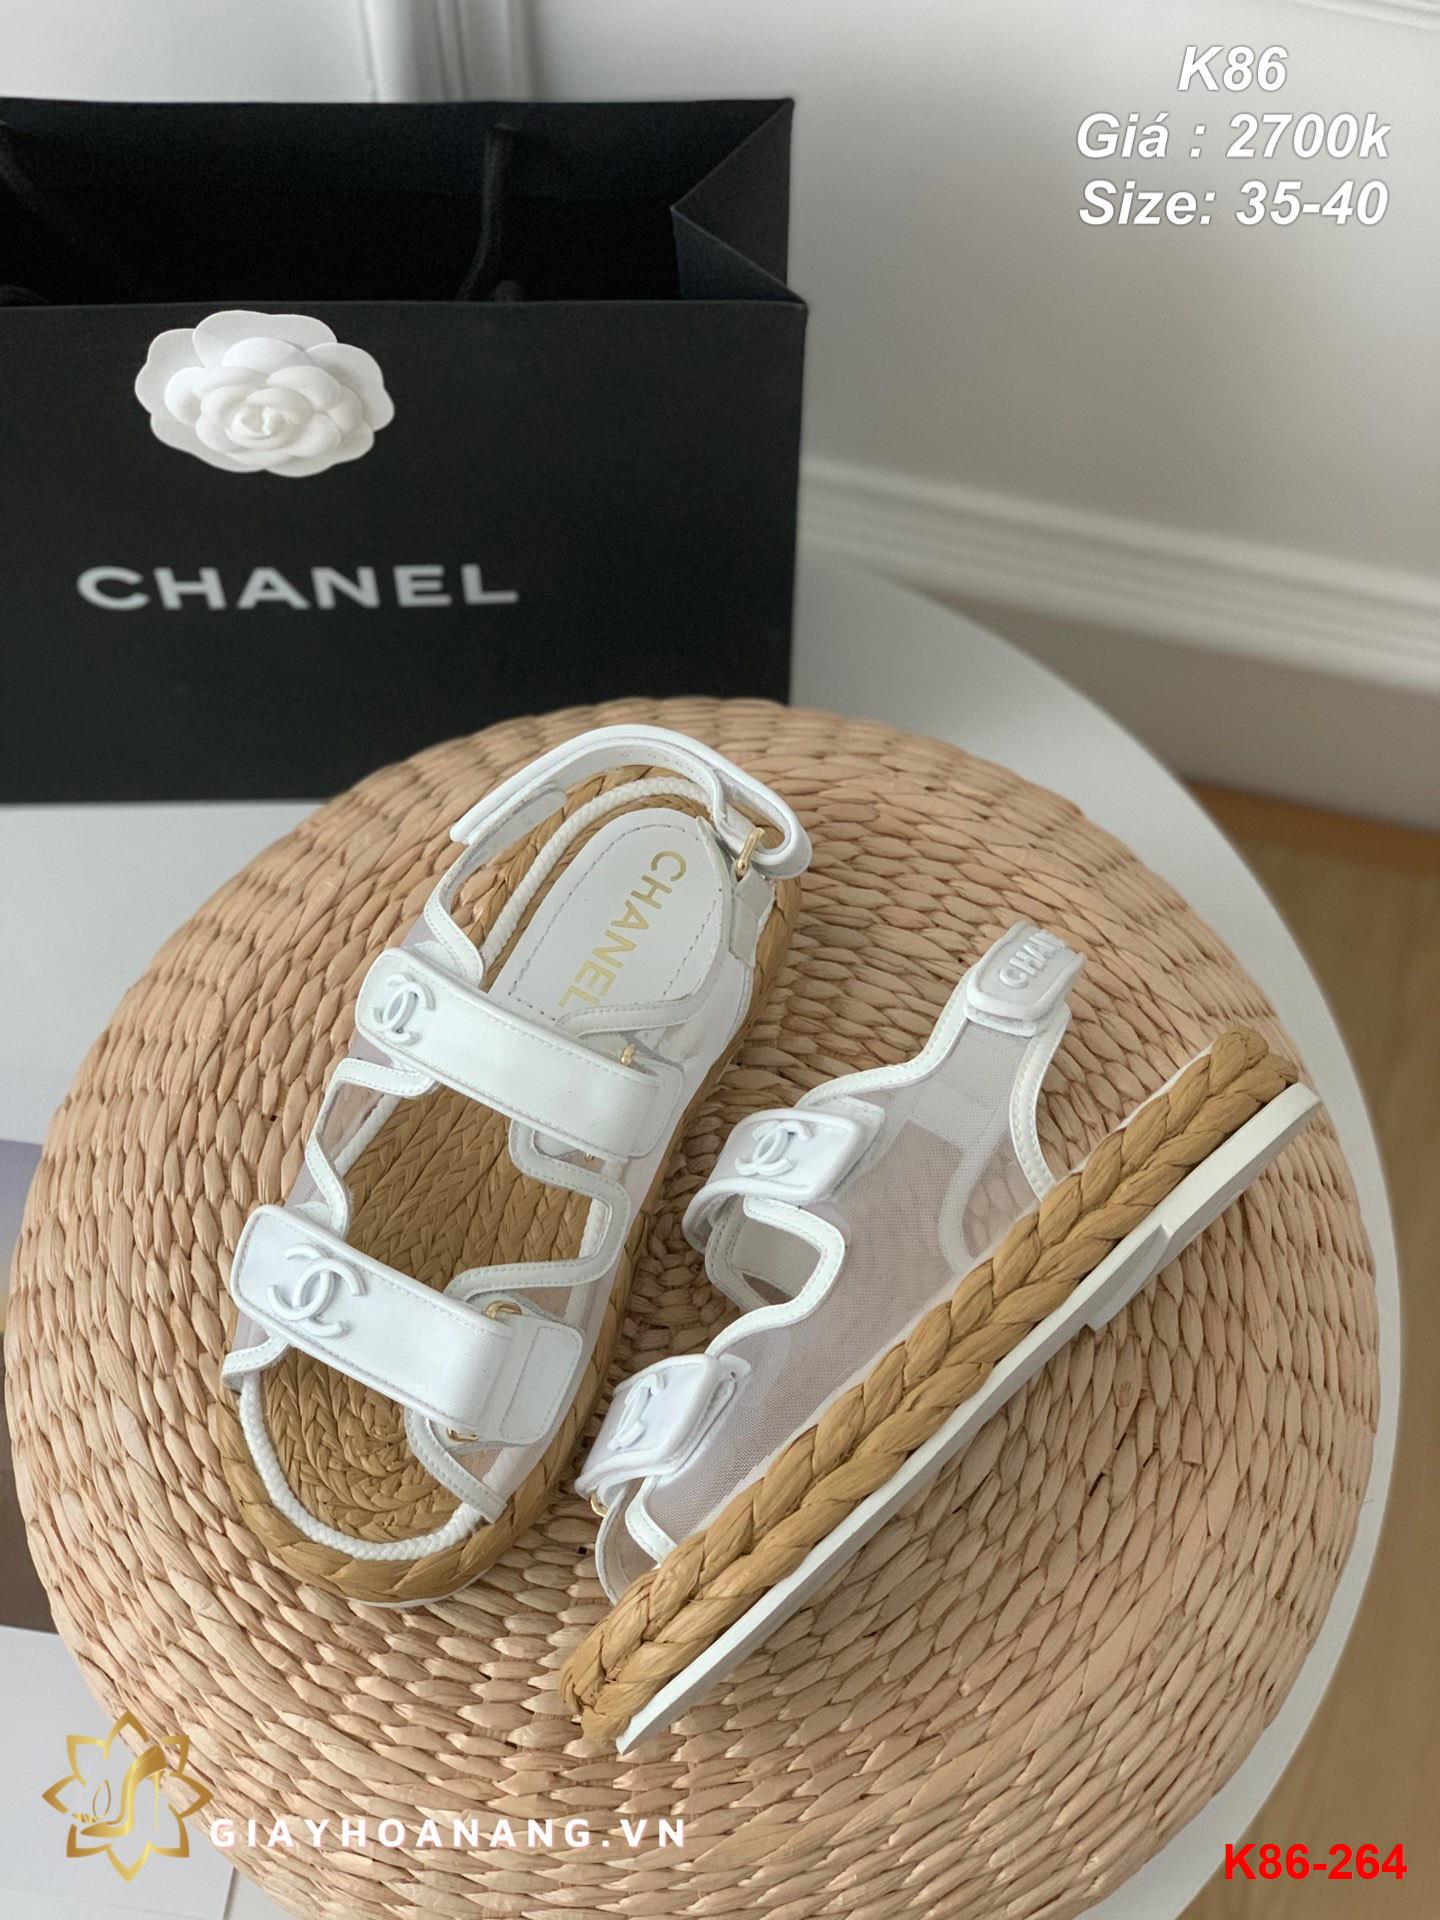 K86-264 Chanel sandal siêu cấp